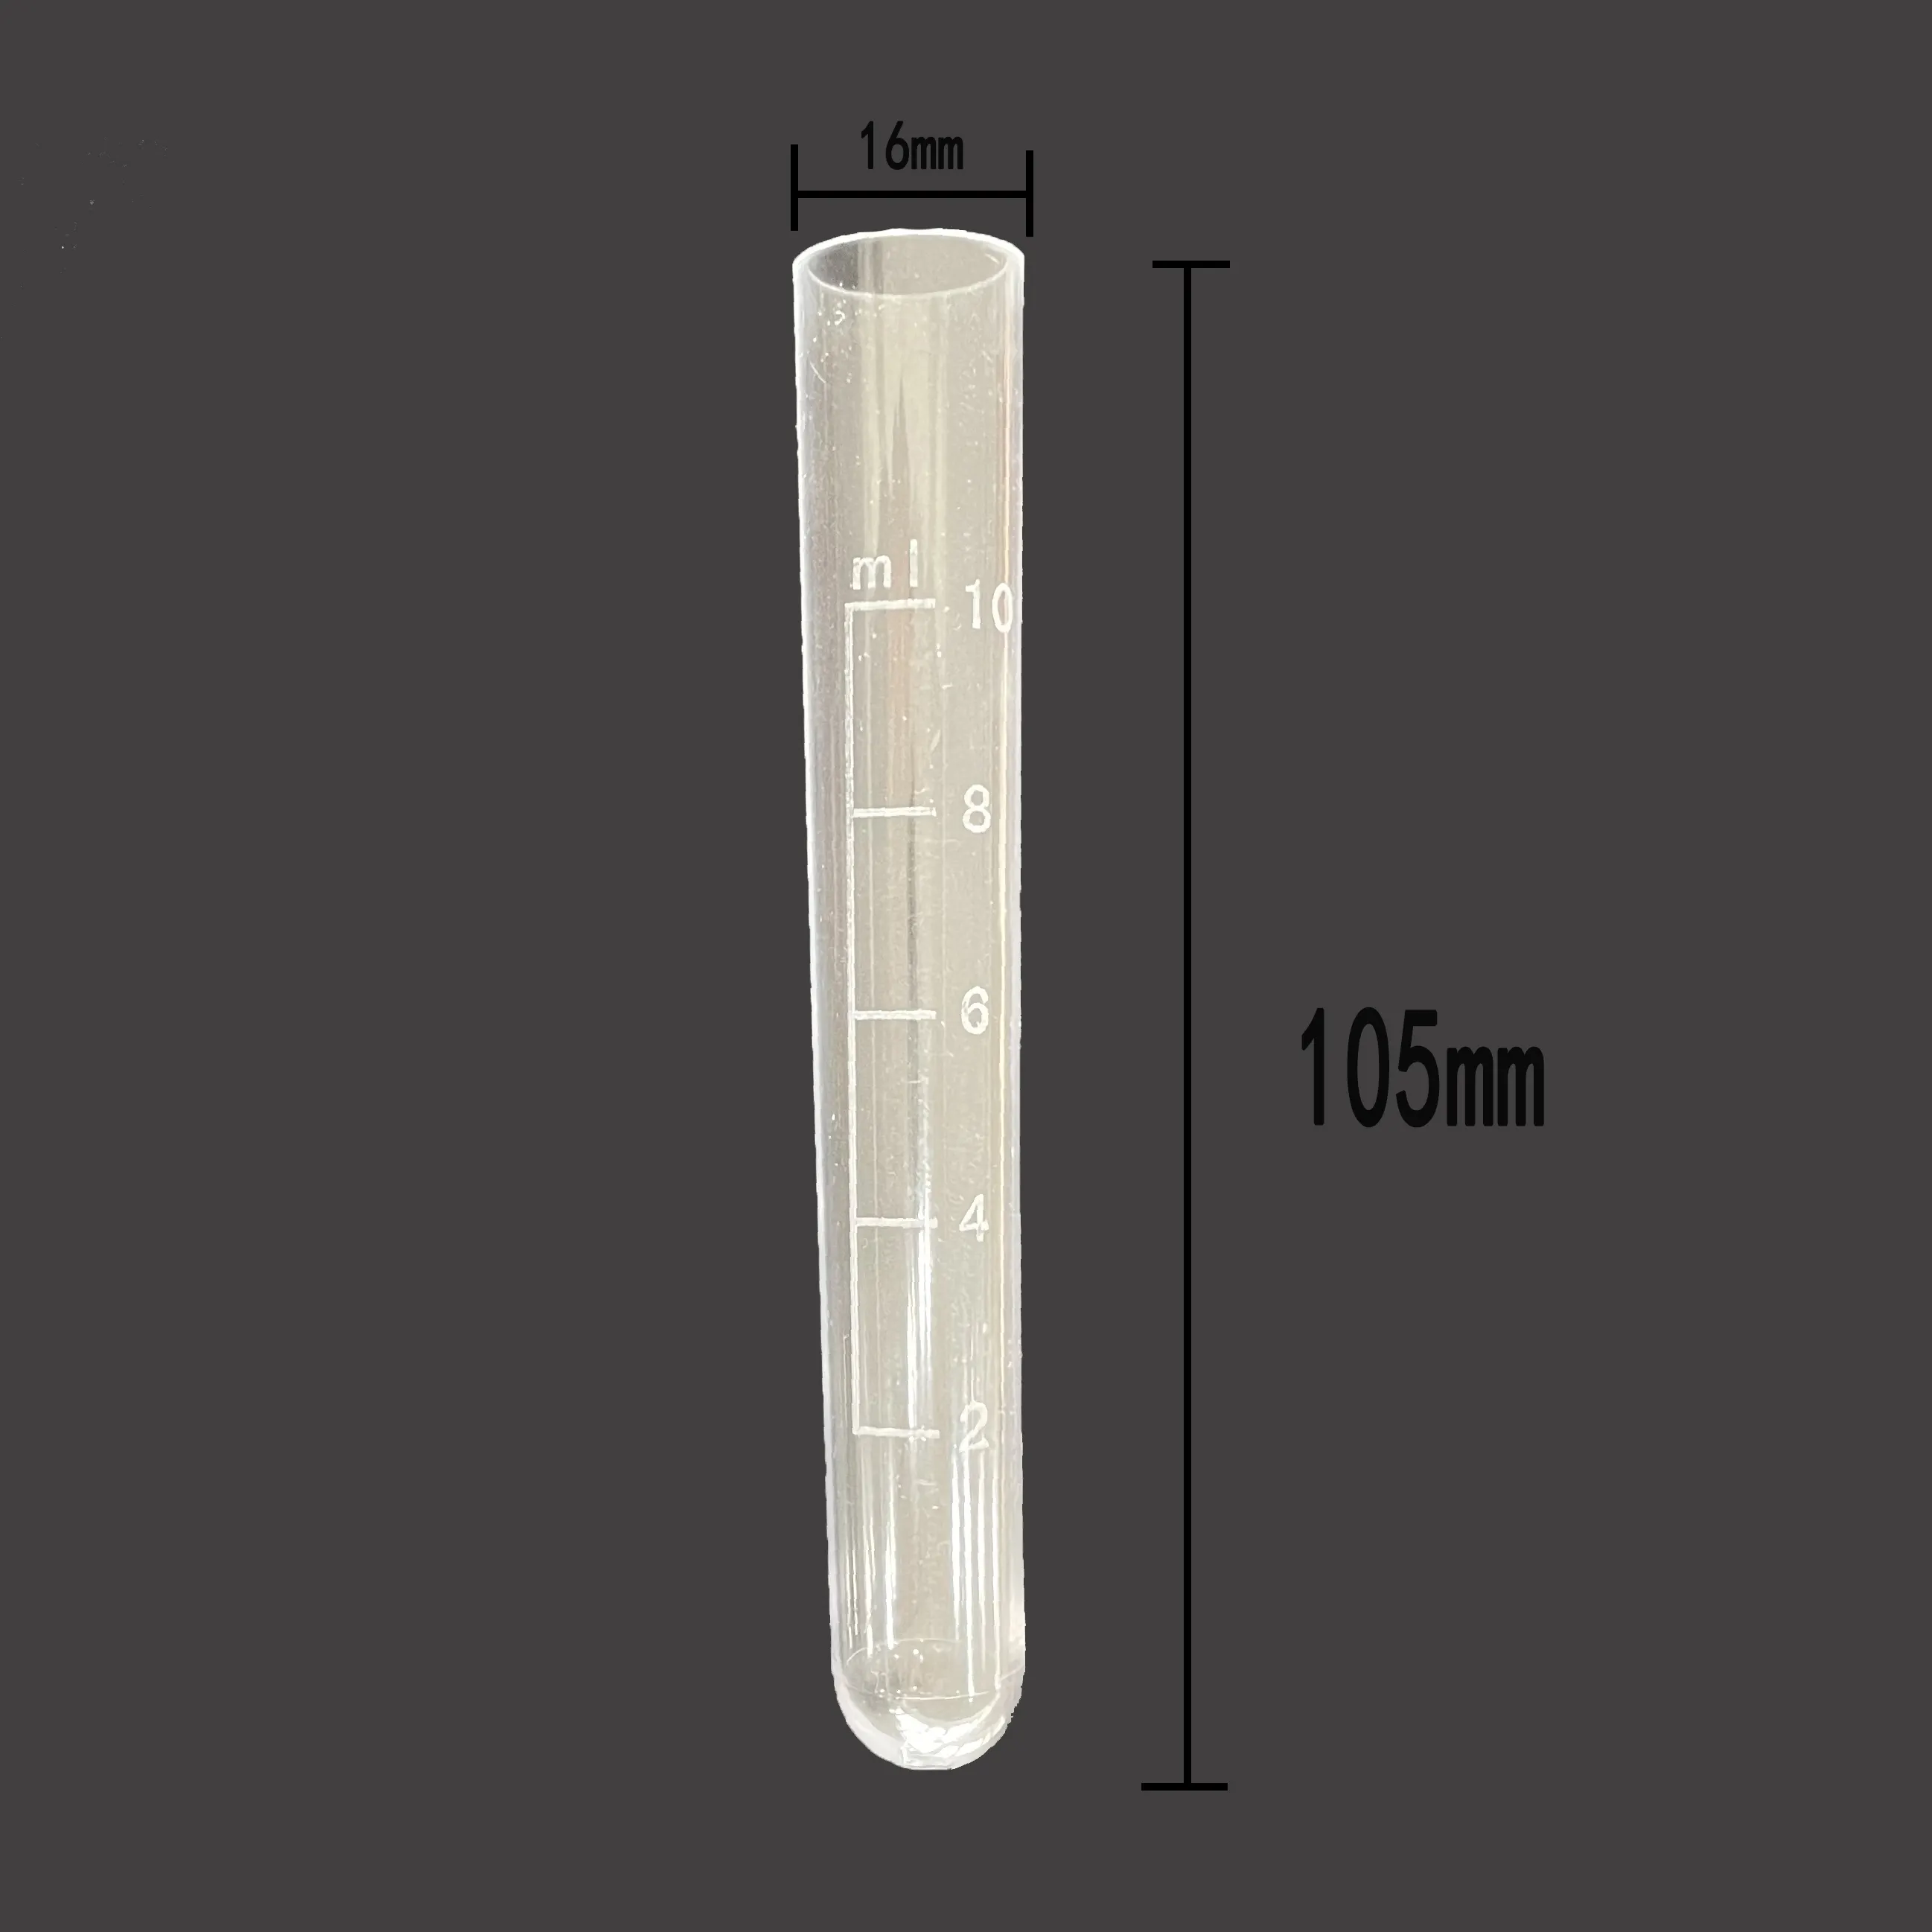 Venta caliente Uso de laboratorio tubos de alta calidad 10ml tubo de ensayo graduado plástico con corcho